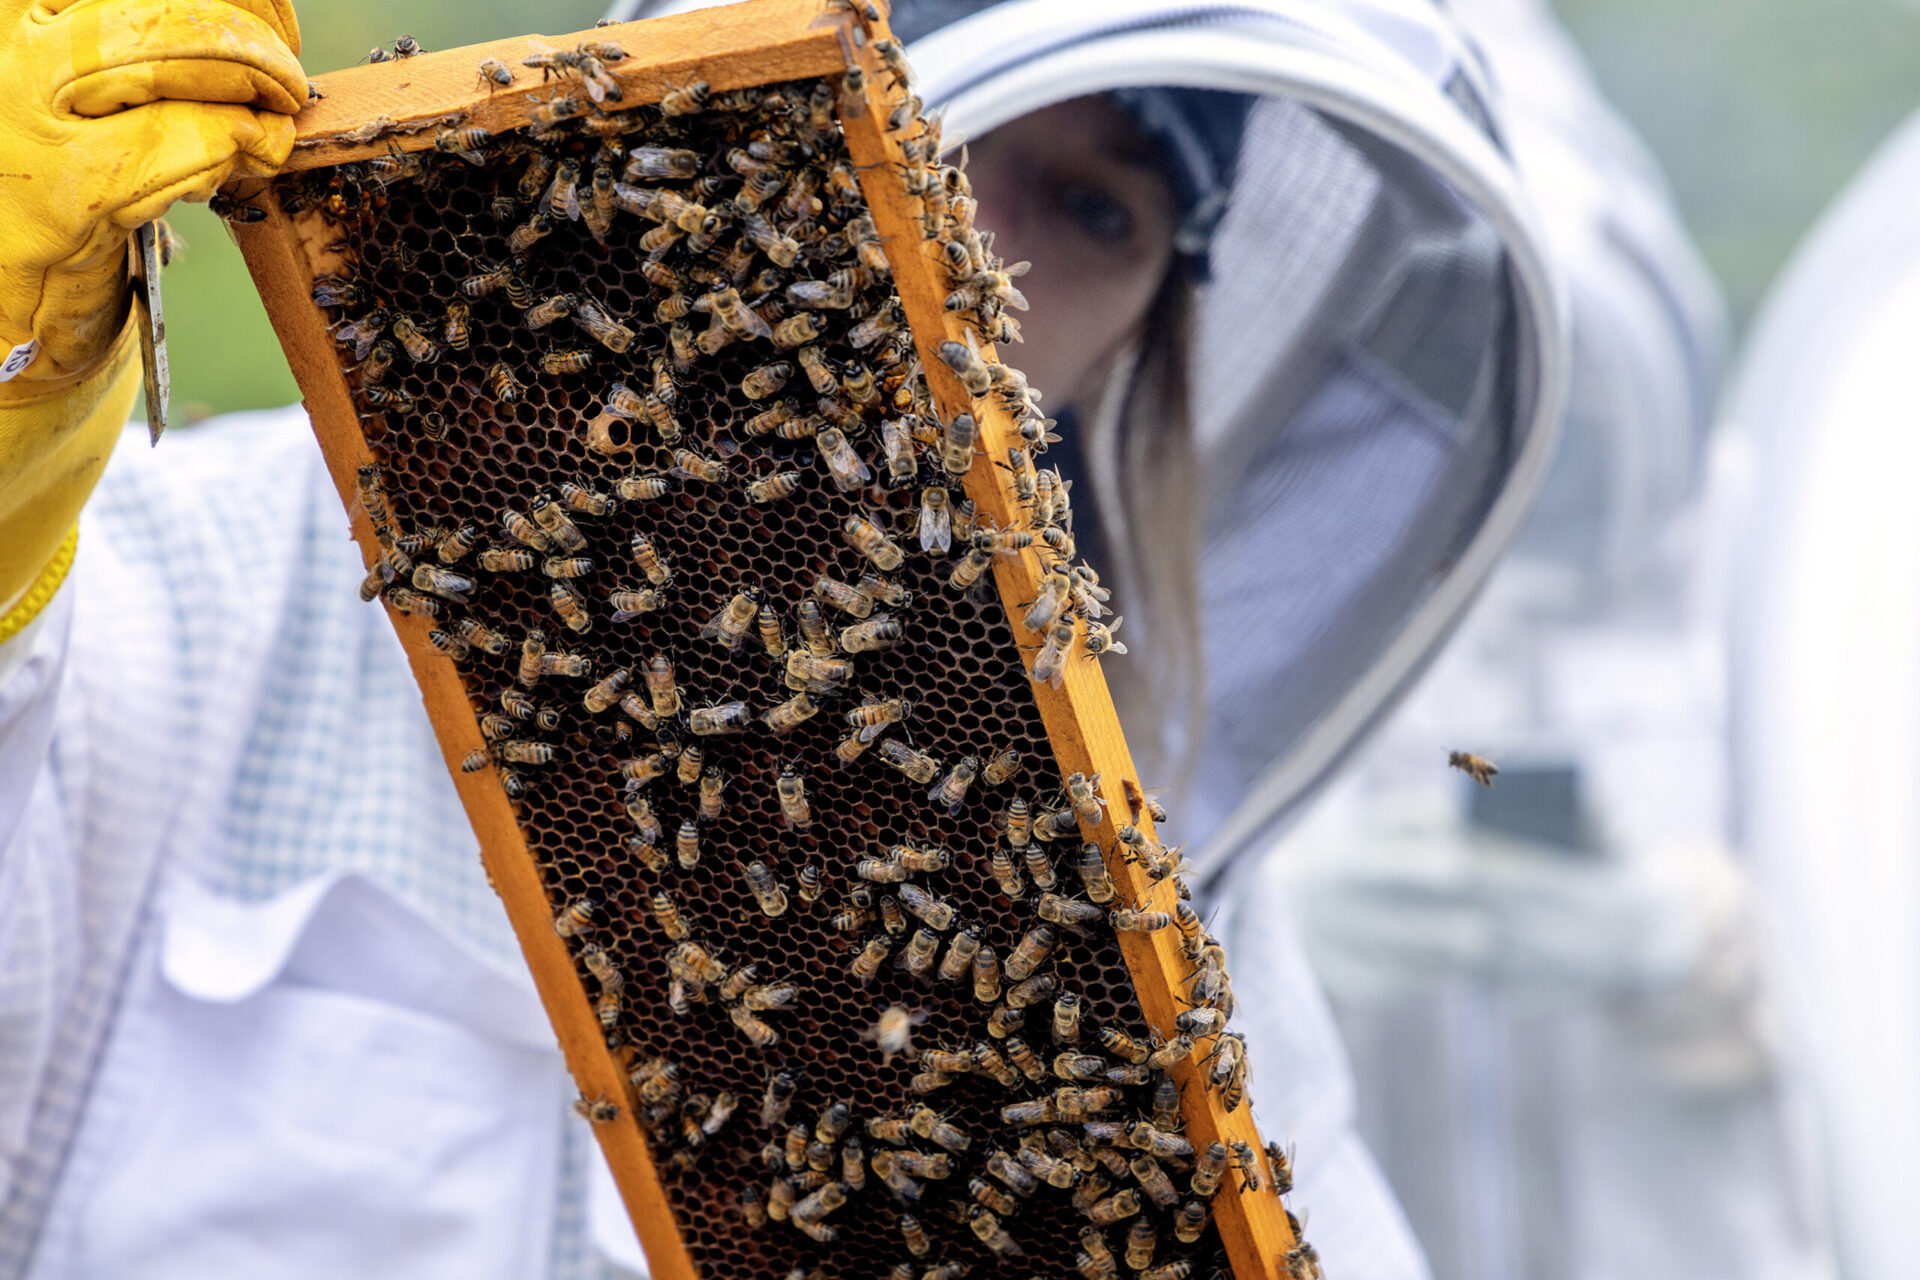 Two Hives Honey – Bee Farm Photos